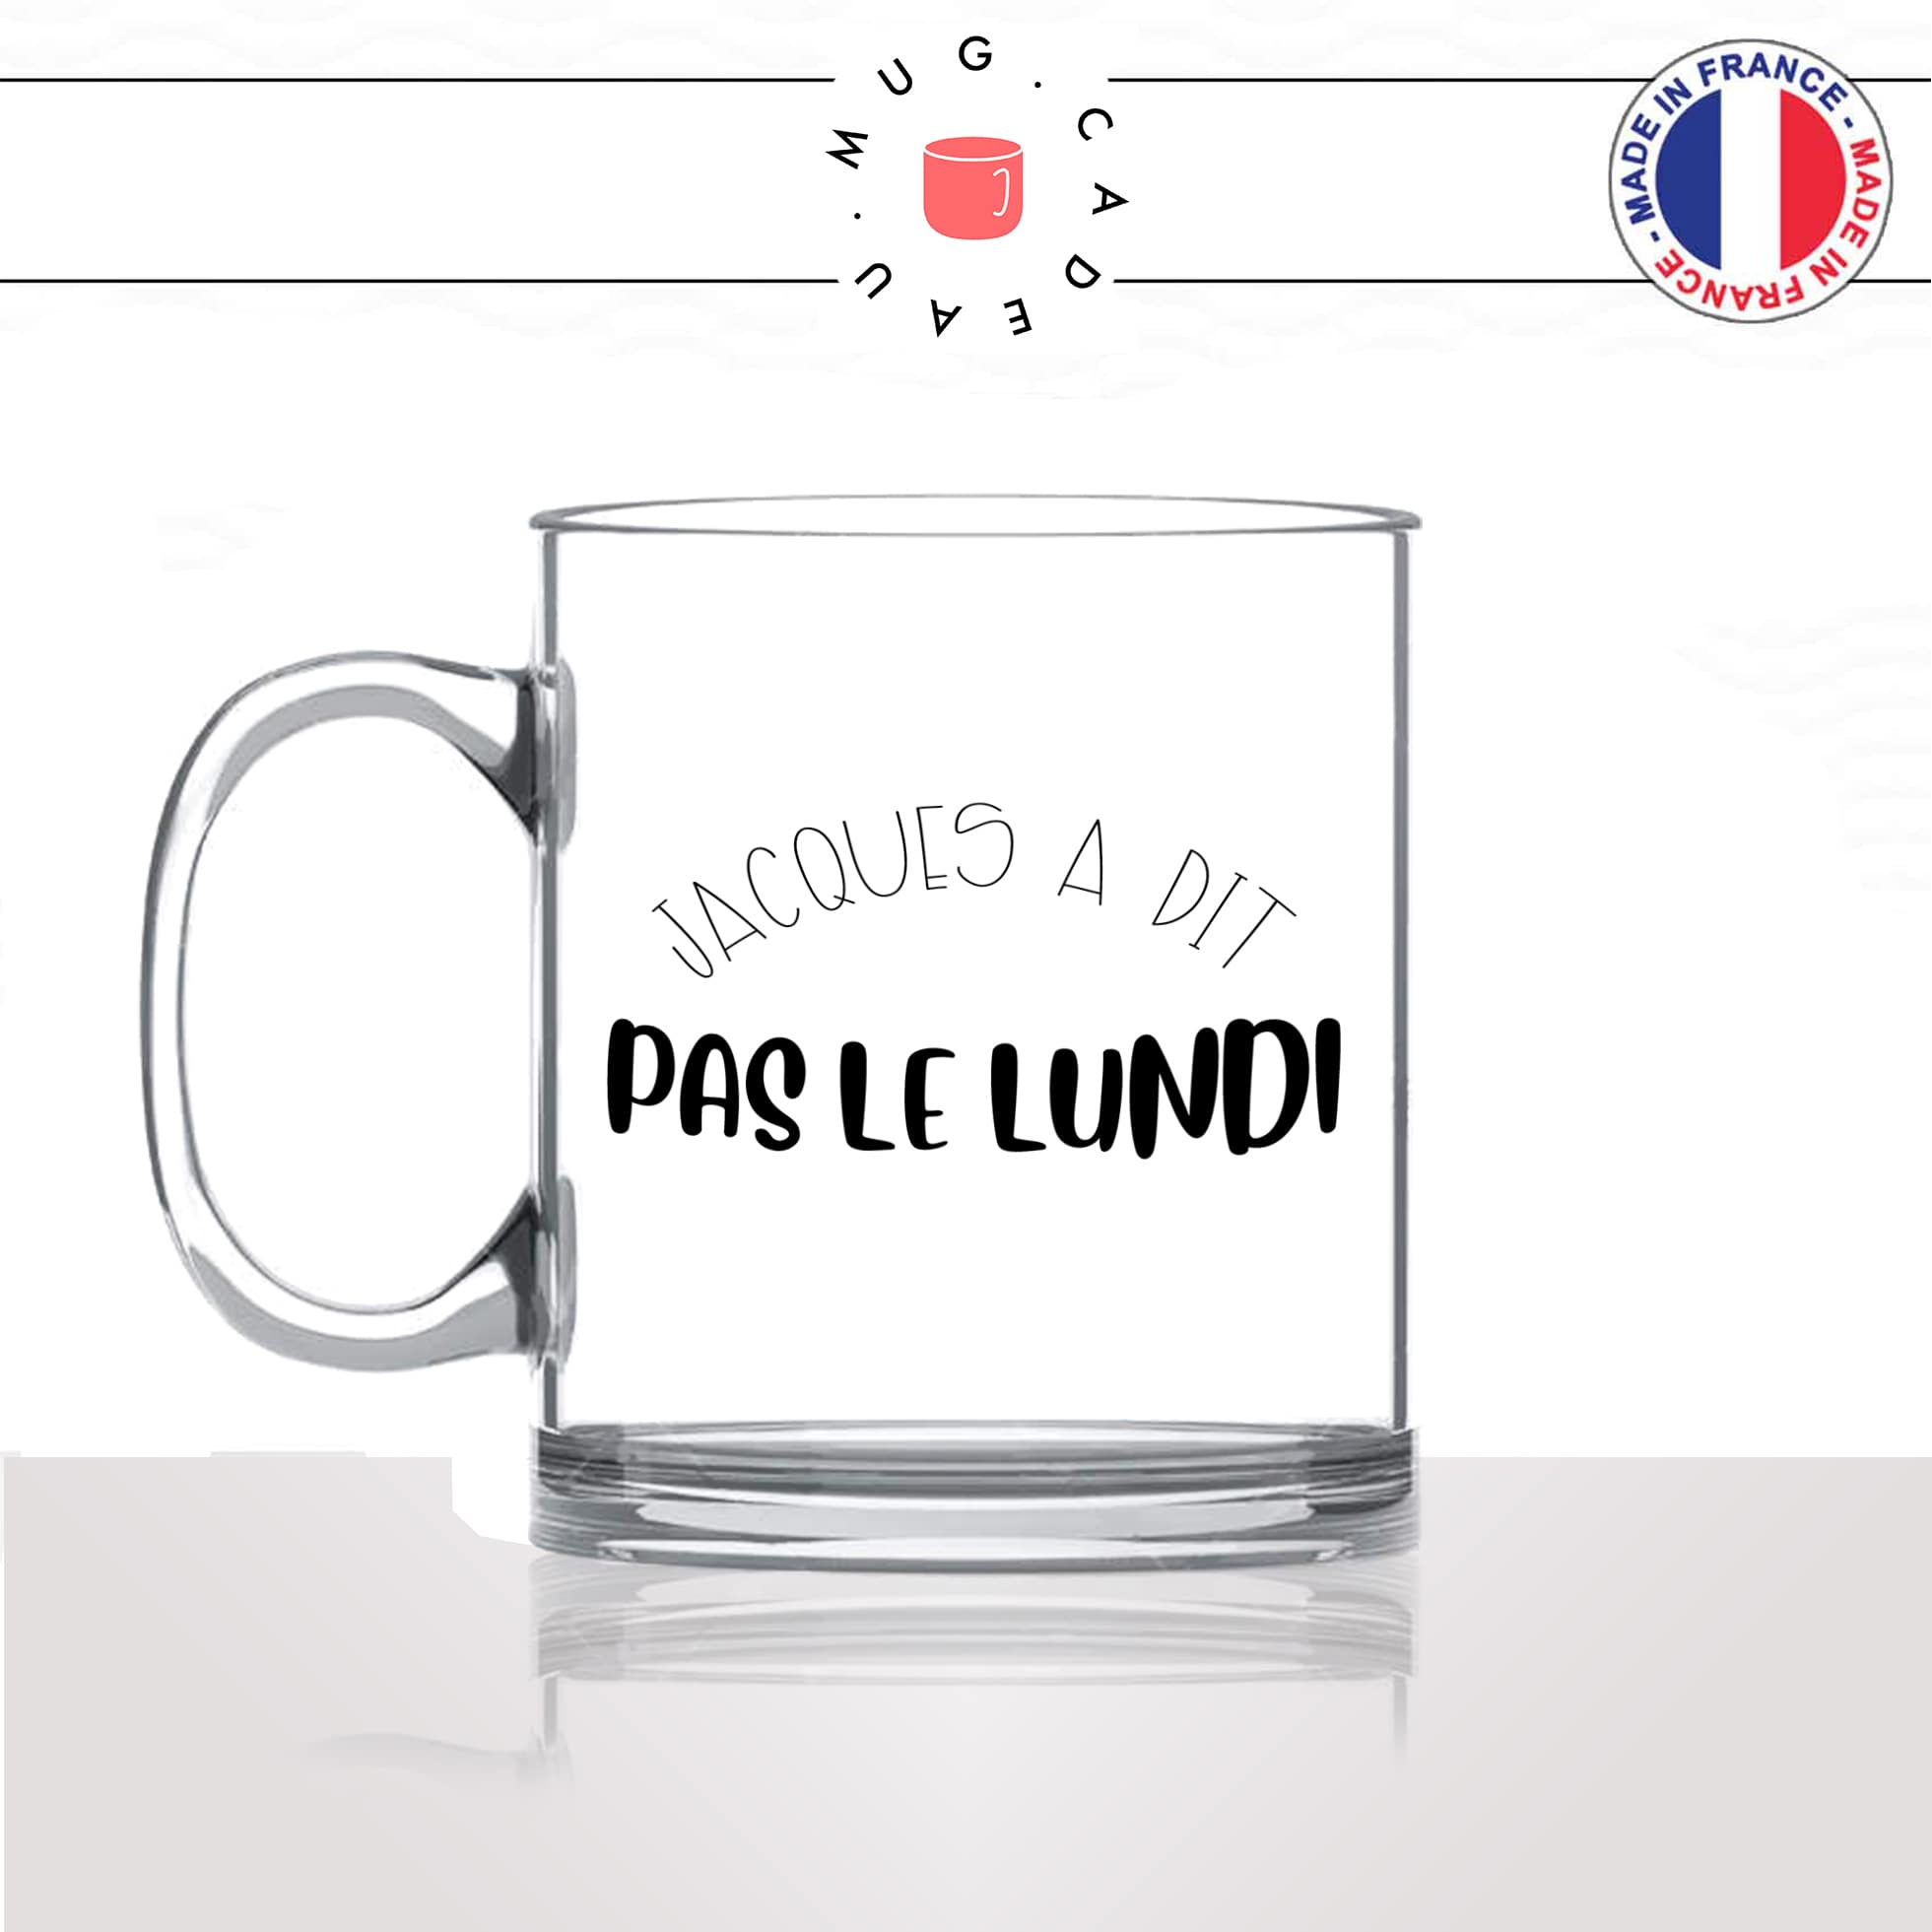 mug-tasse-en-verre-transparent-glass-jacques-a-dit-pas-le-lundi-collegue-ami-travail-week-end-humour-idée-cadeau-fun-cool-café-thé-original-min